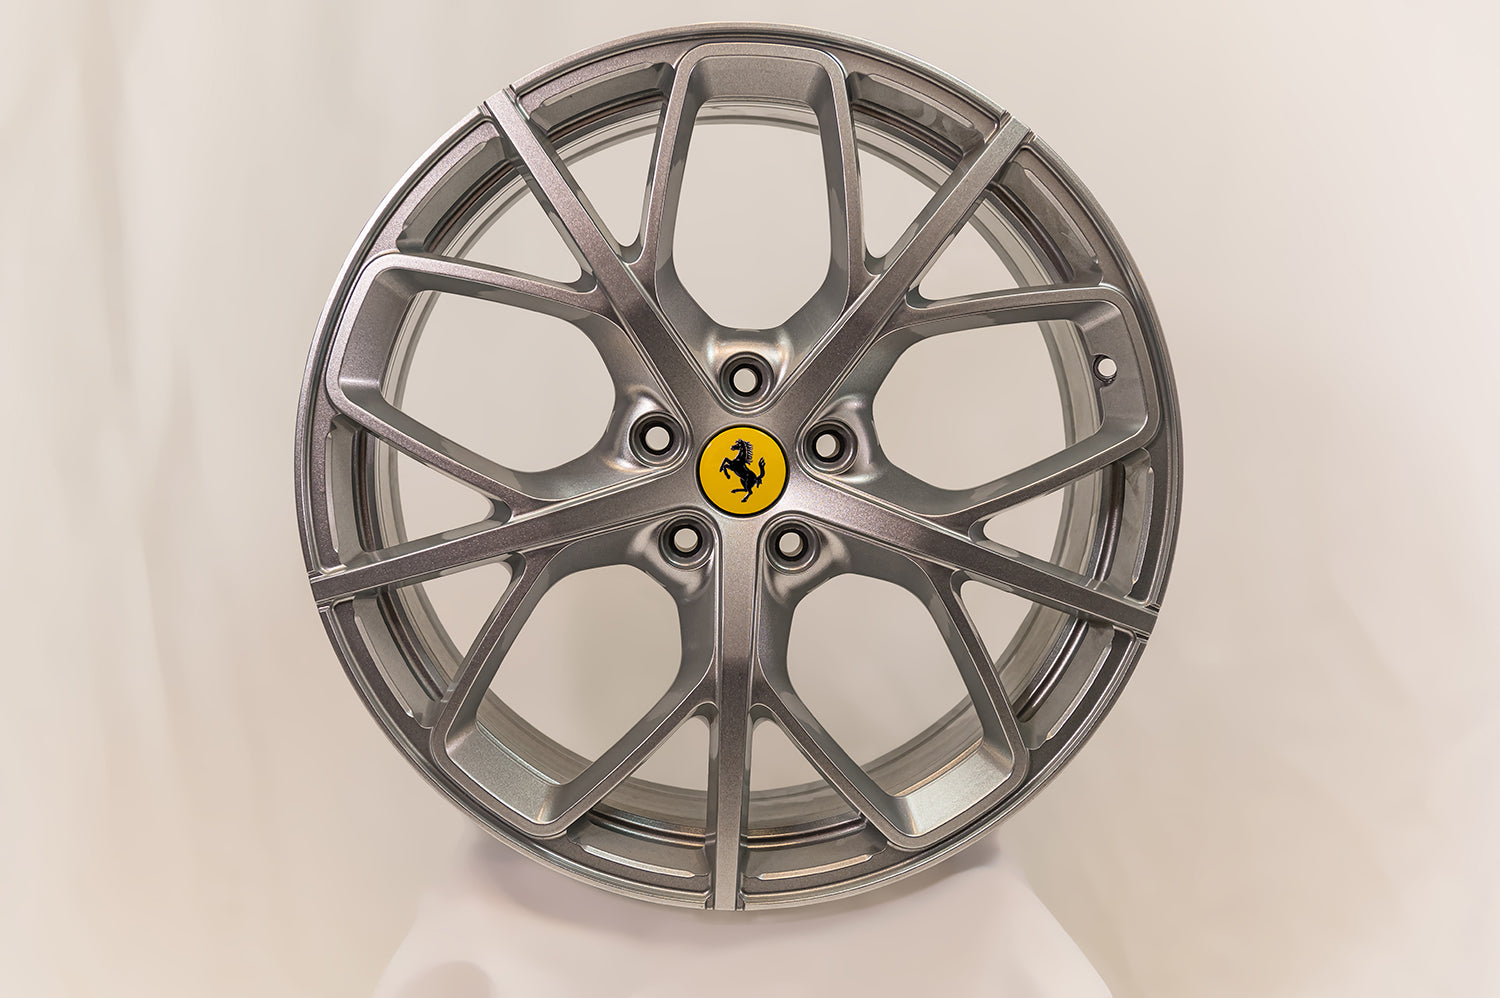 Ferrari Portofino 20" Factory Wheel Set with Titanium lugs